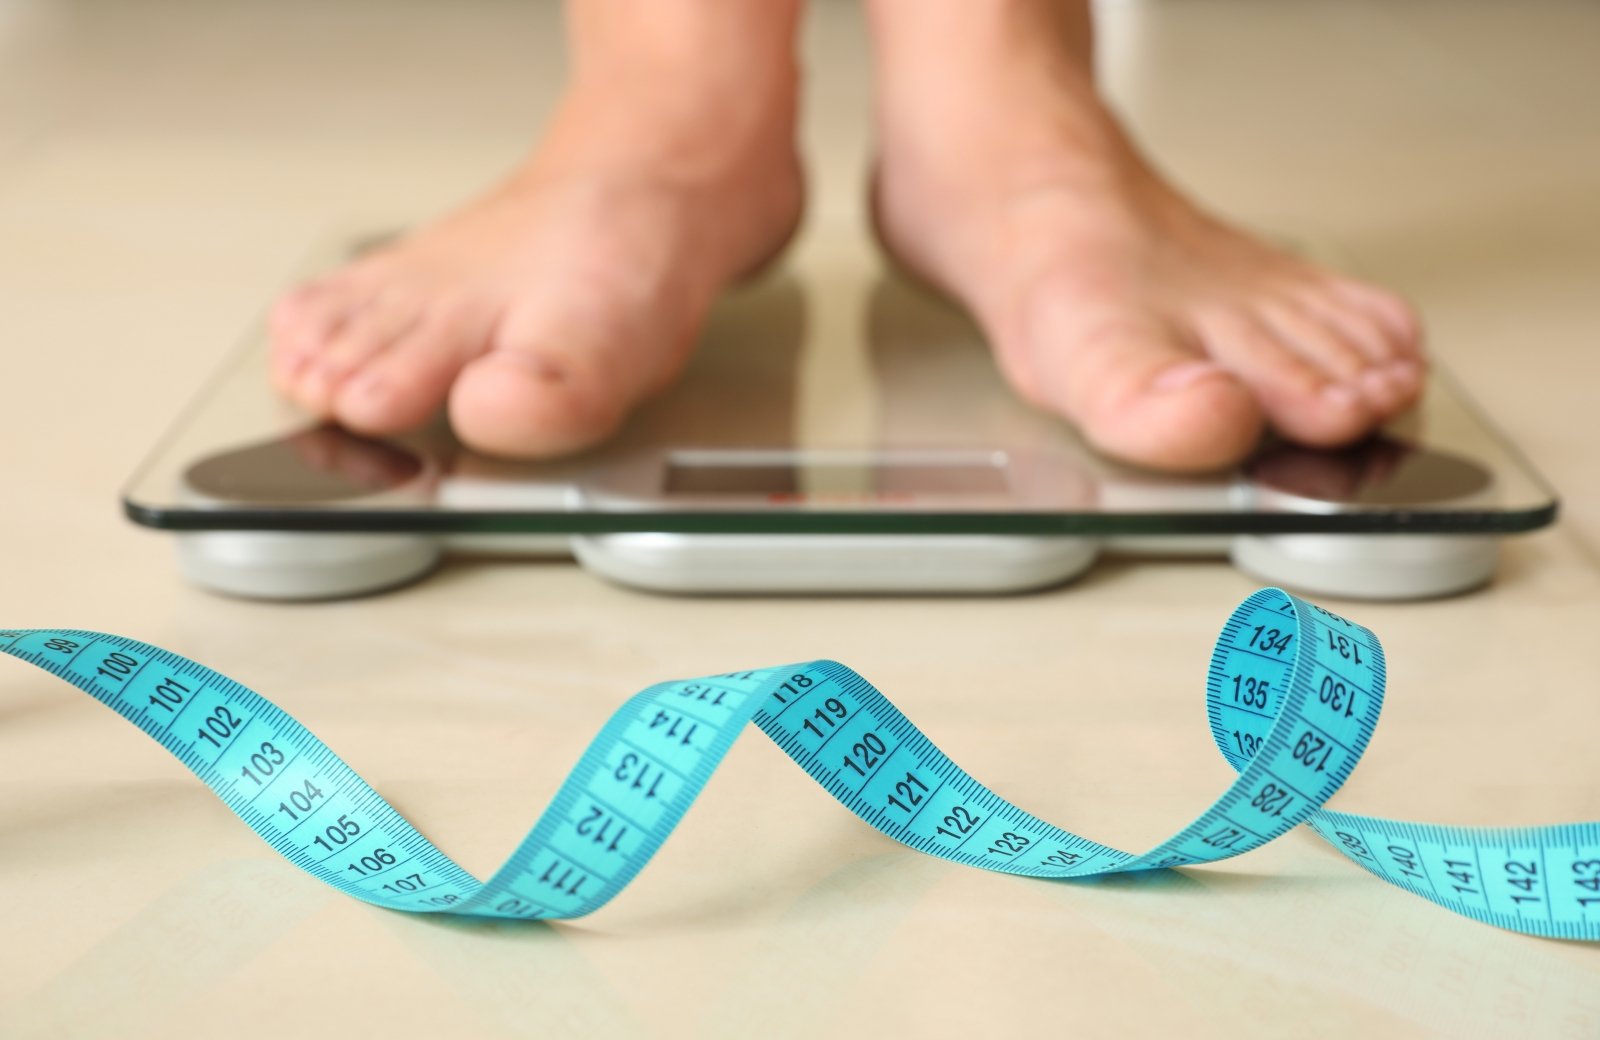 svorio metimo vyru sveikata vartai svorio netekimas